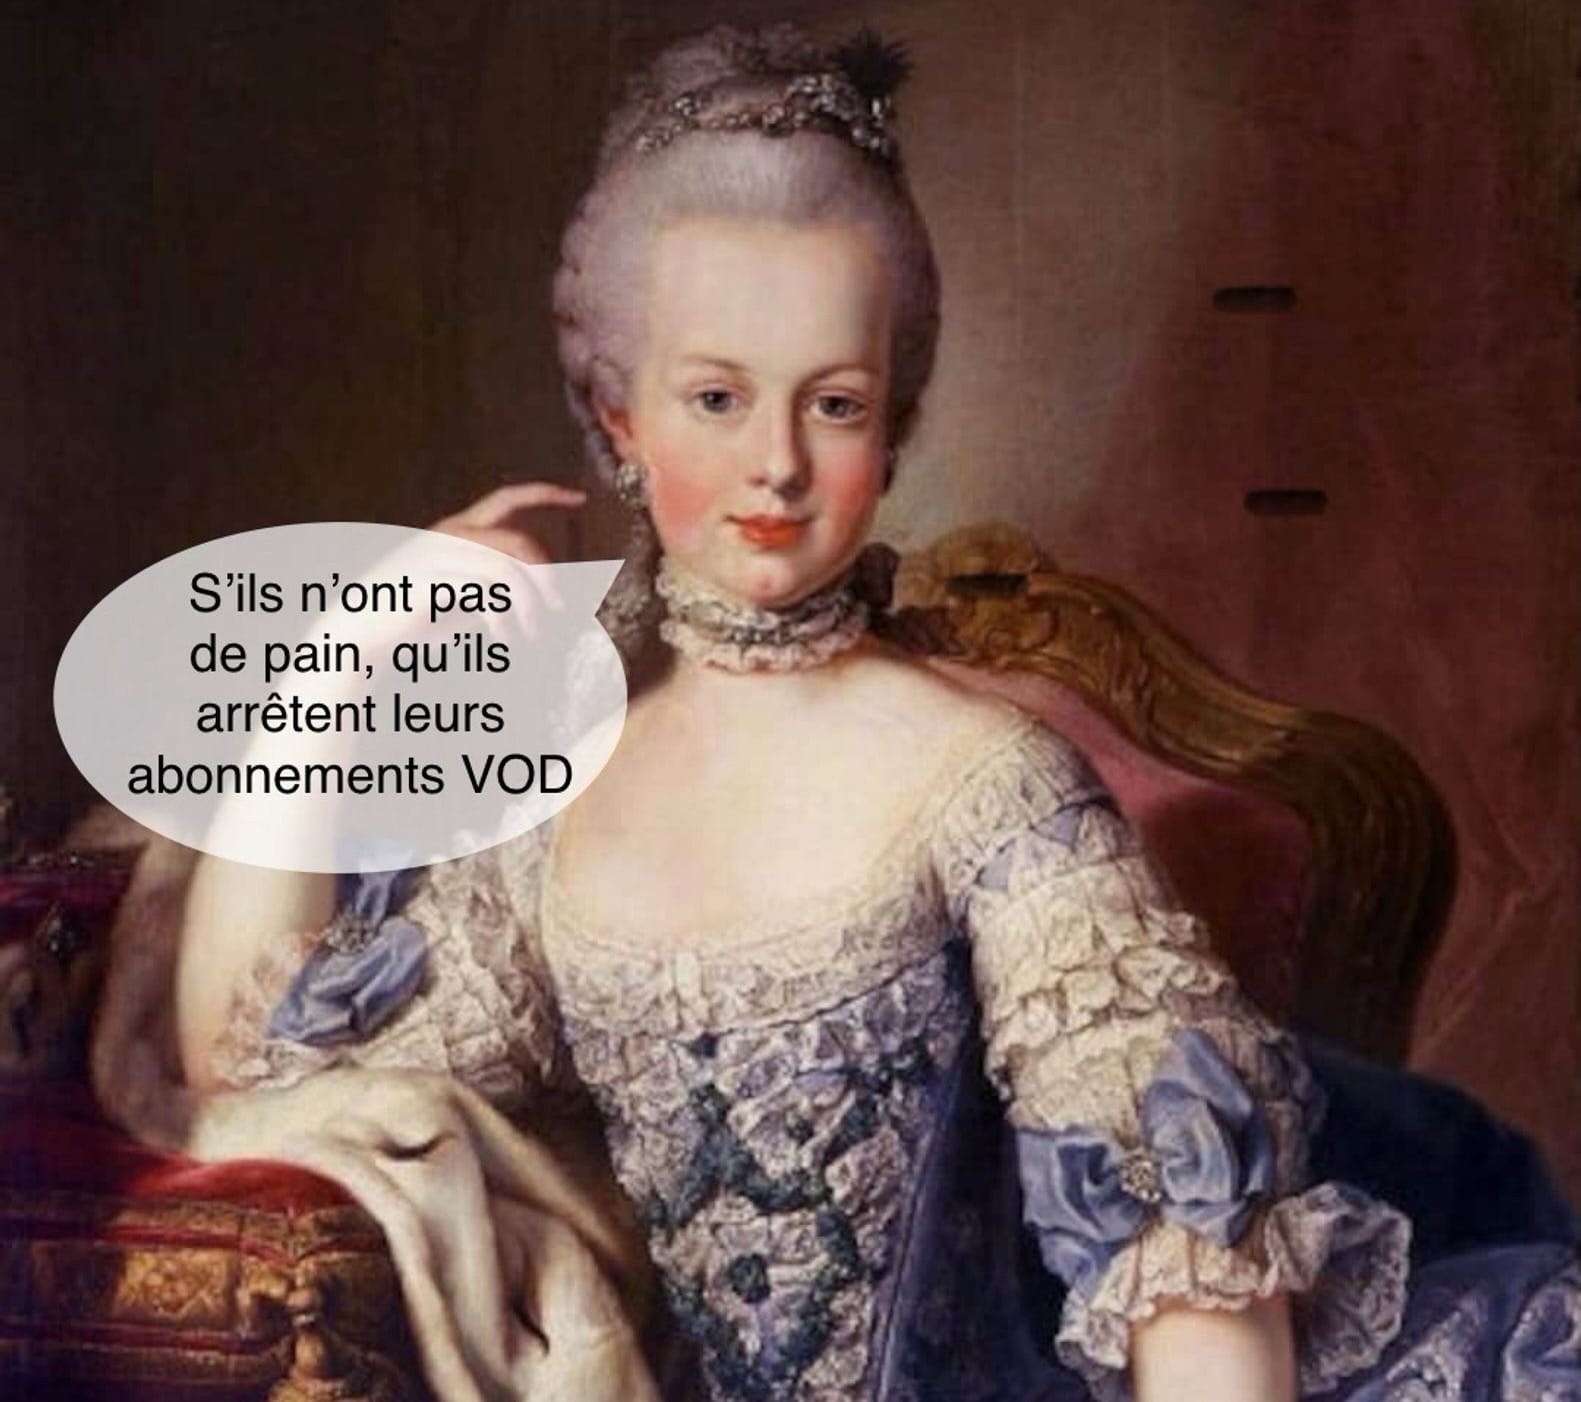 Meme représentant Marie-Antoinette, et sa célèbre citation pâtissière, légèrement détournée : "S'ils n'ont pas de pain, qu'ils arrêtent leurs abonnements VOD" 